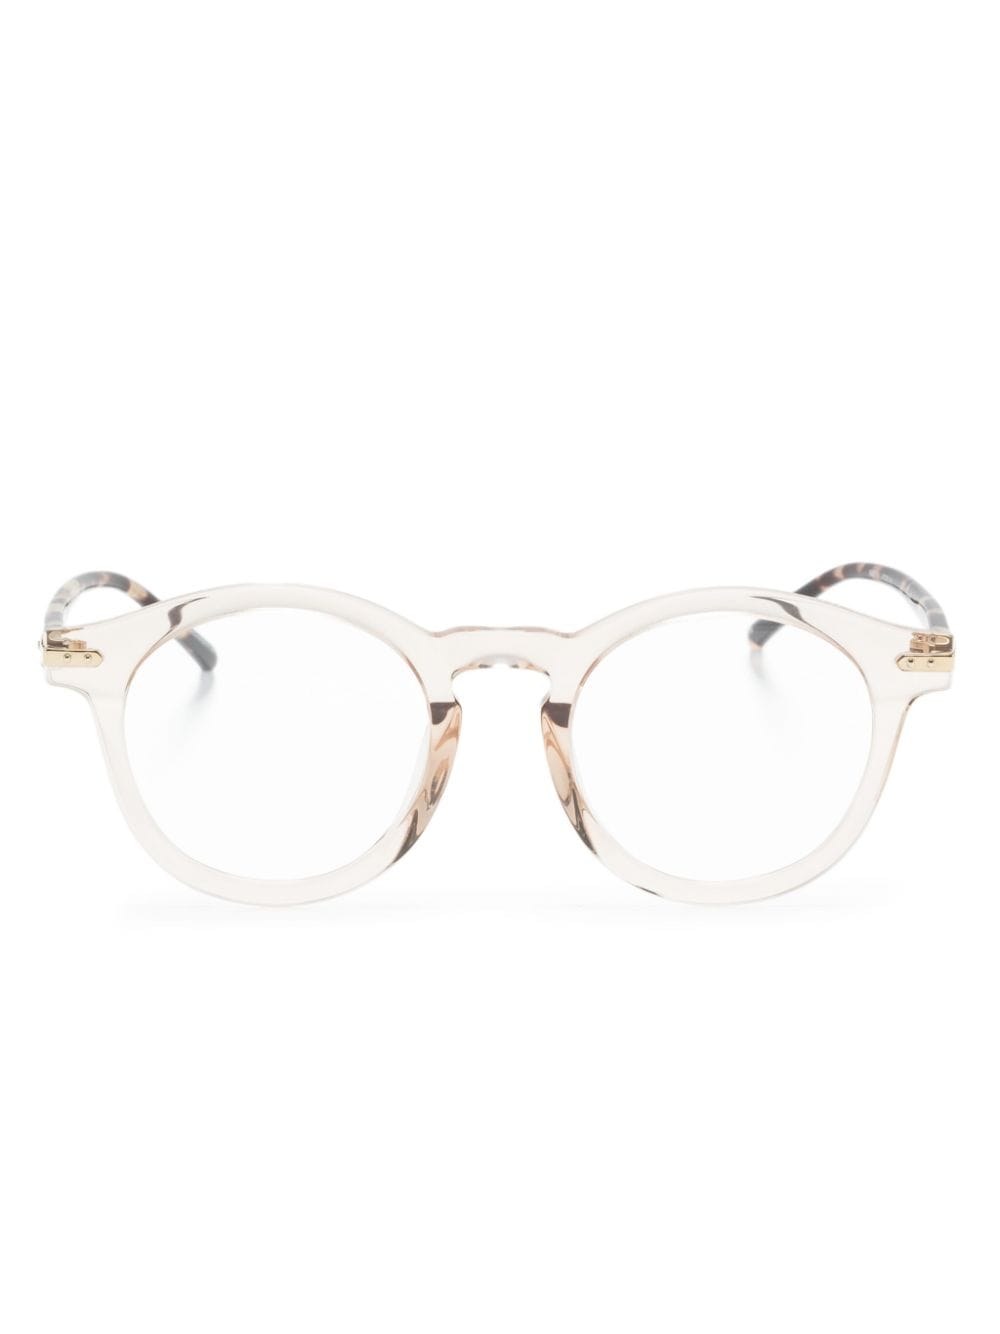 Linda Farrow pantos-frame glasses - Brown von Linda Farrow